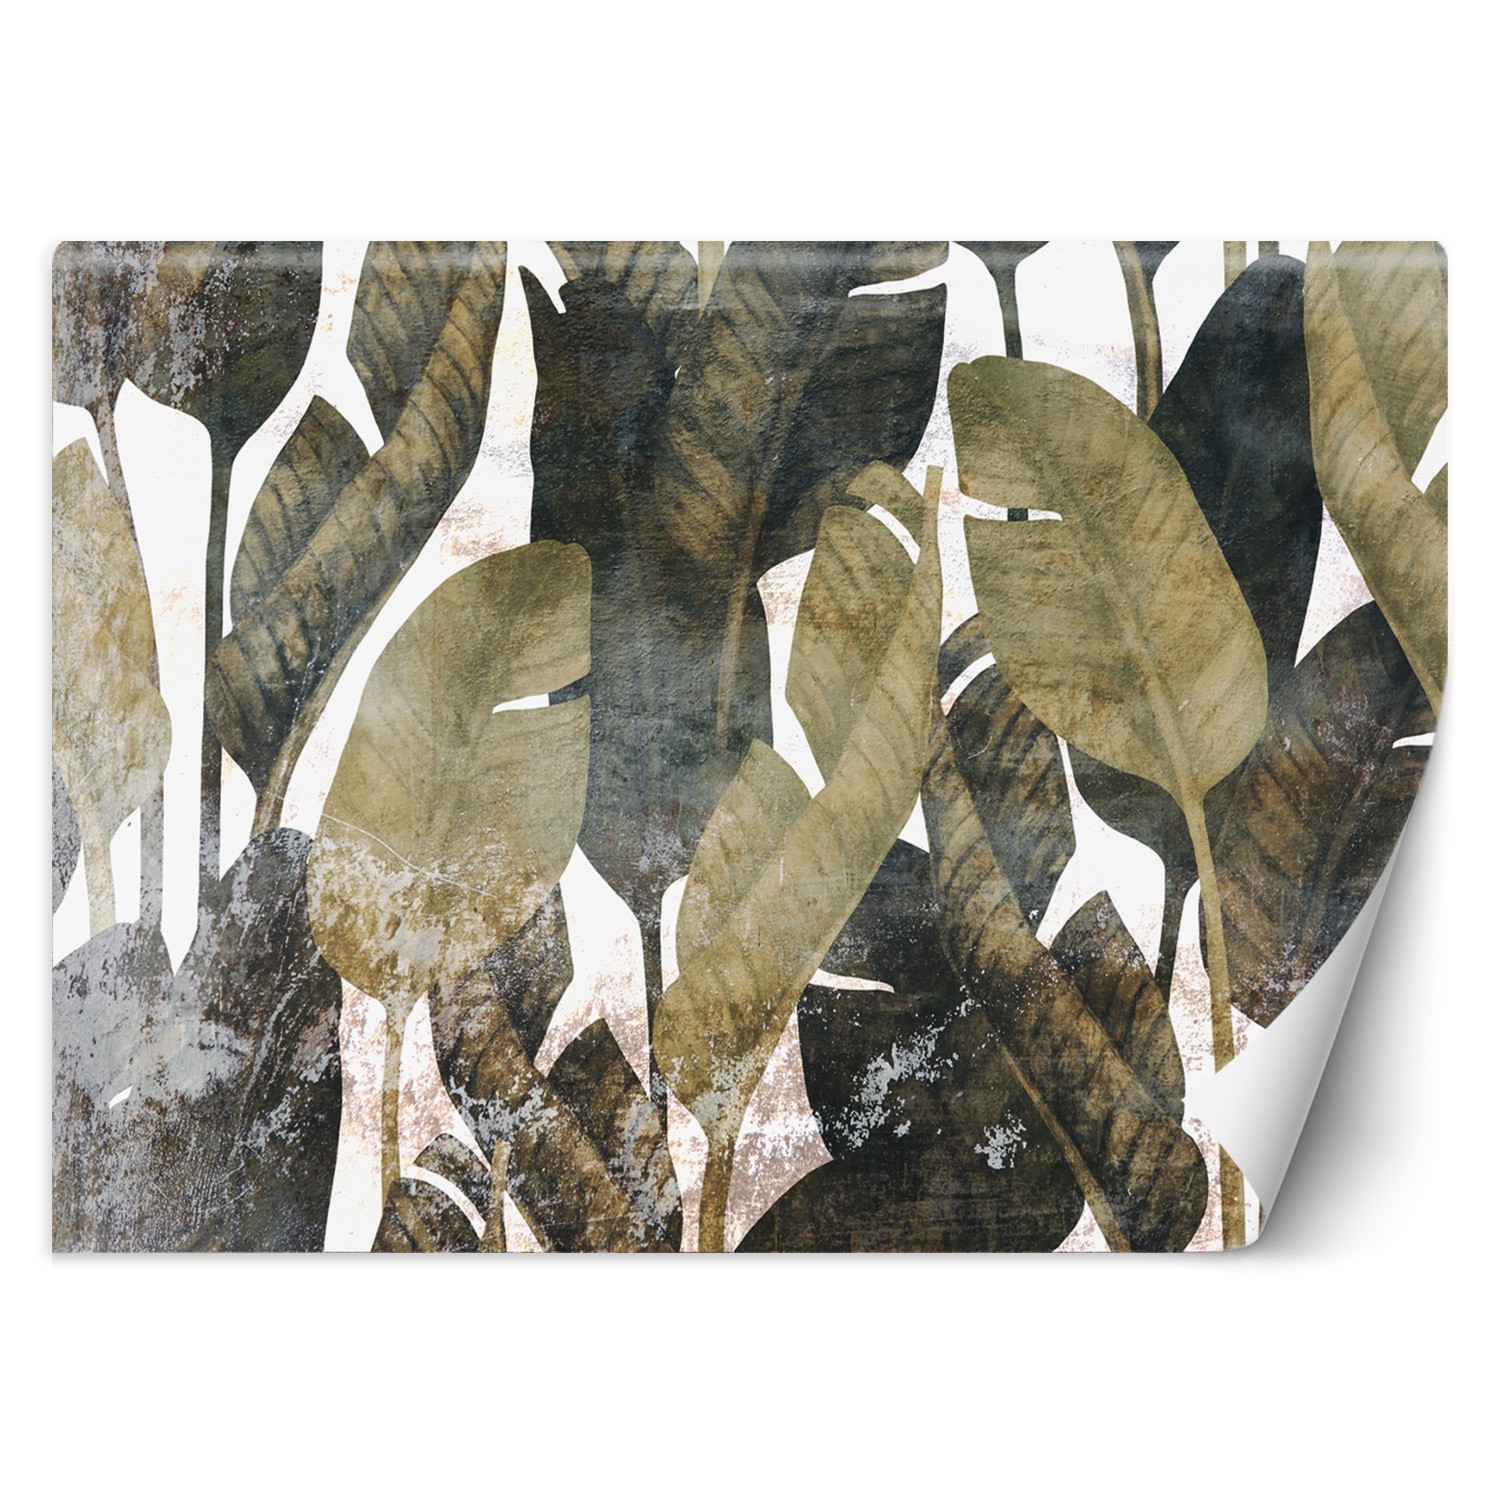 Trend24 – Behang – Bananenblaadjes – Vliesbehang – Fotobehang 3D – Behang Woonkamer – 400x280x2 cm – Incl. behanglijm